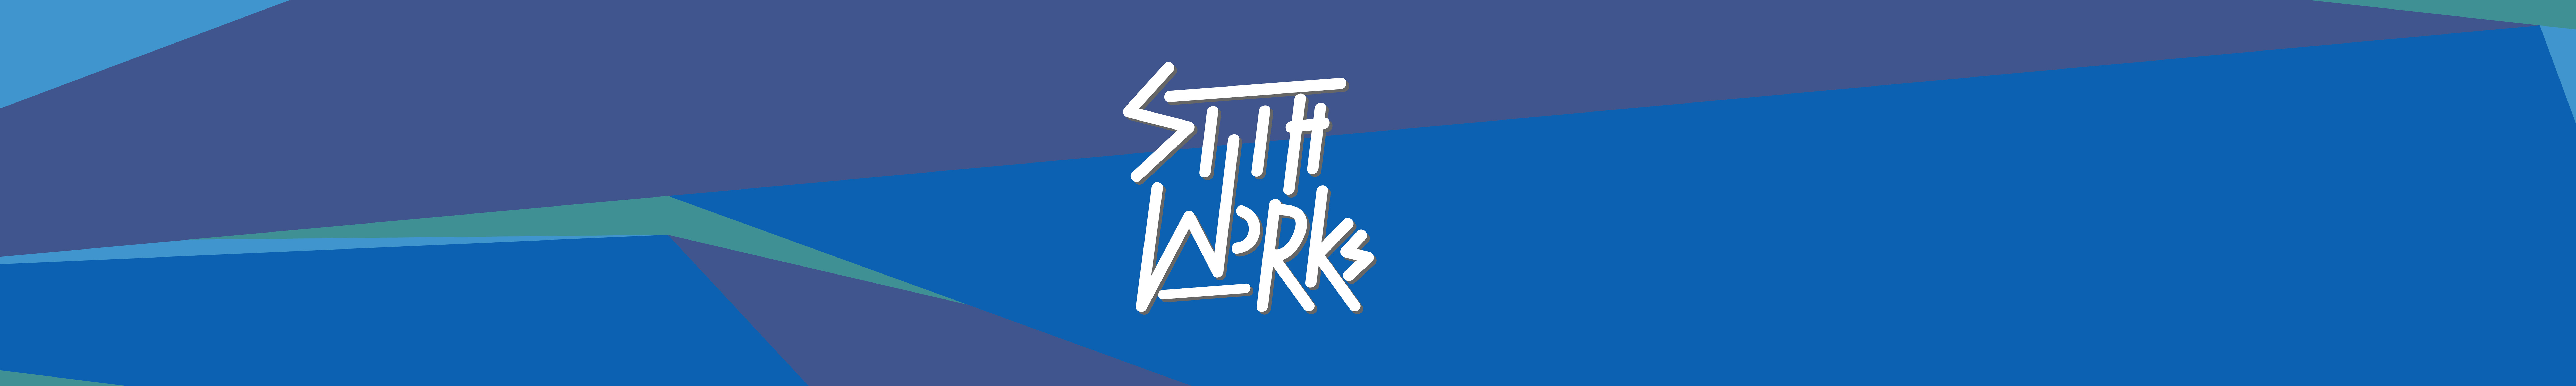 Profil-Banner von Kris Stith